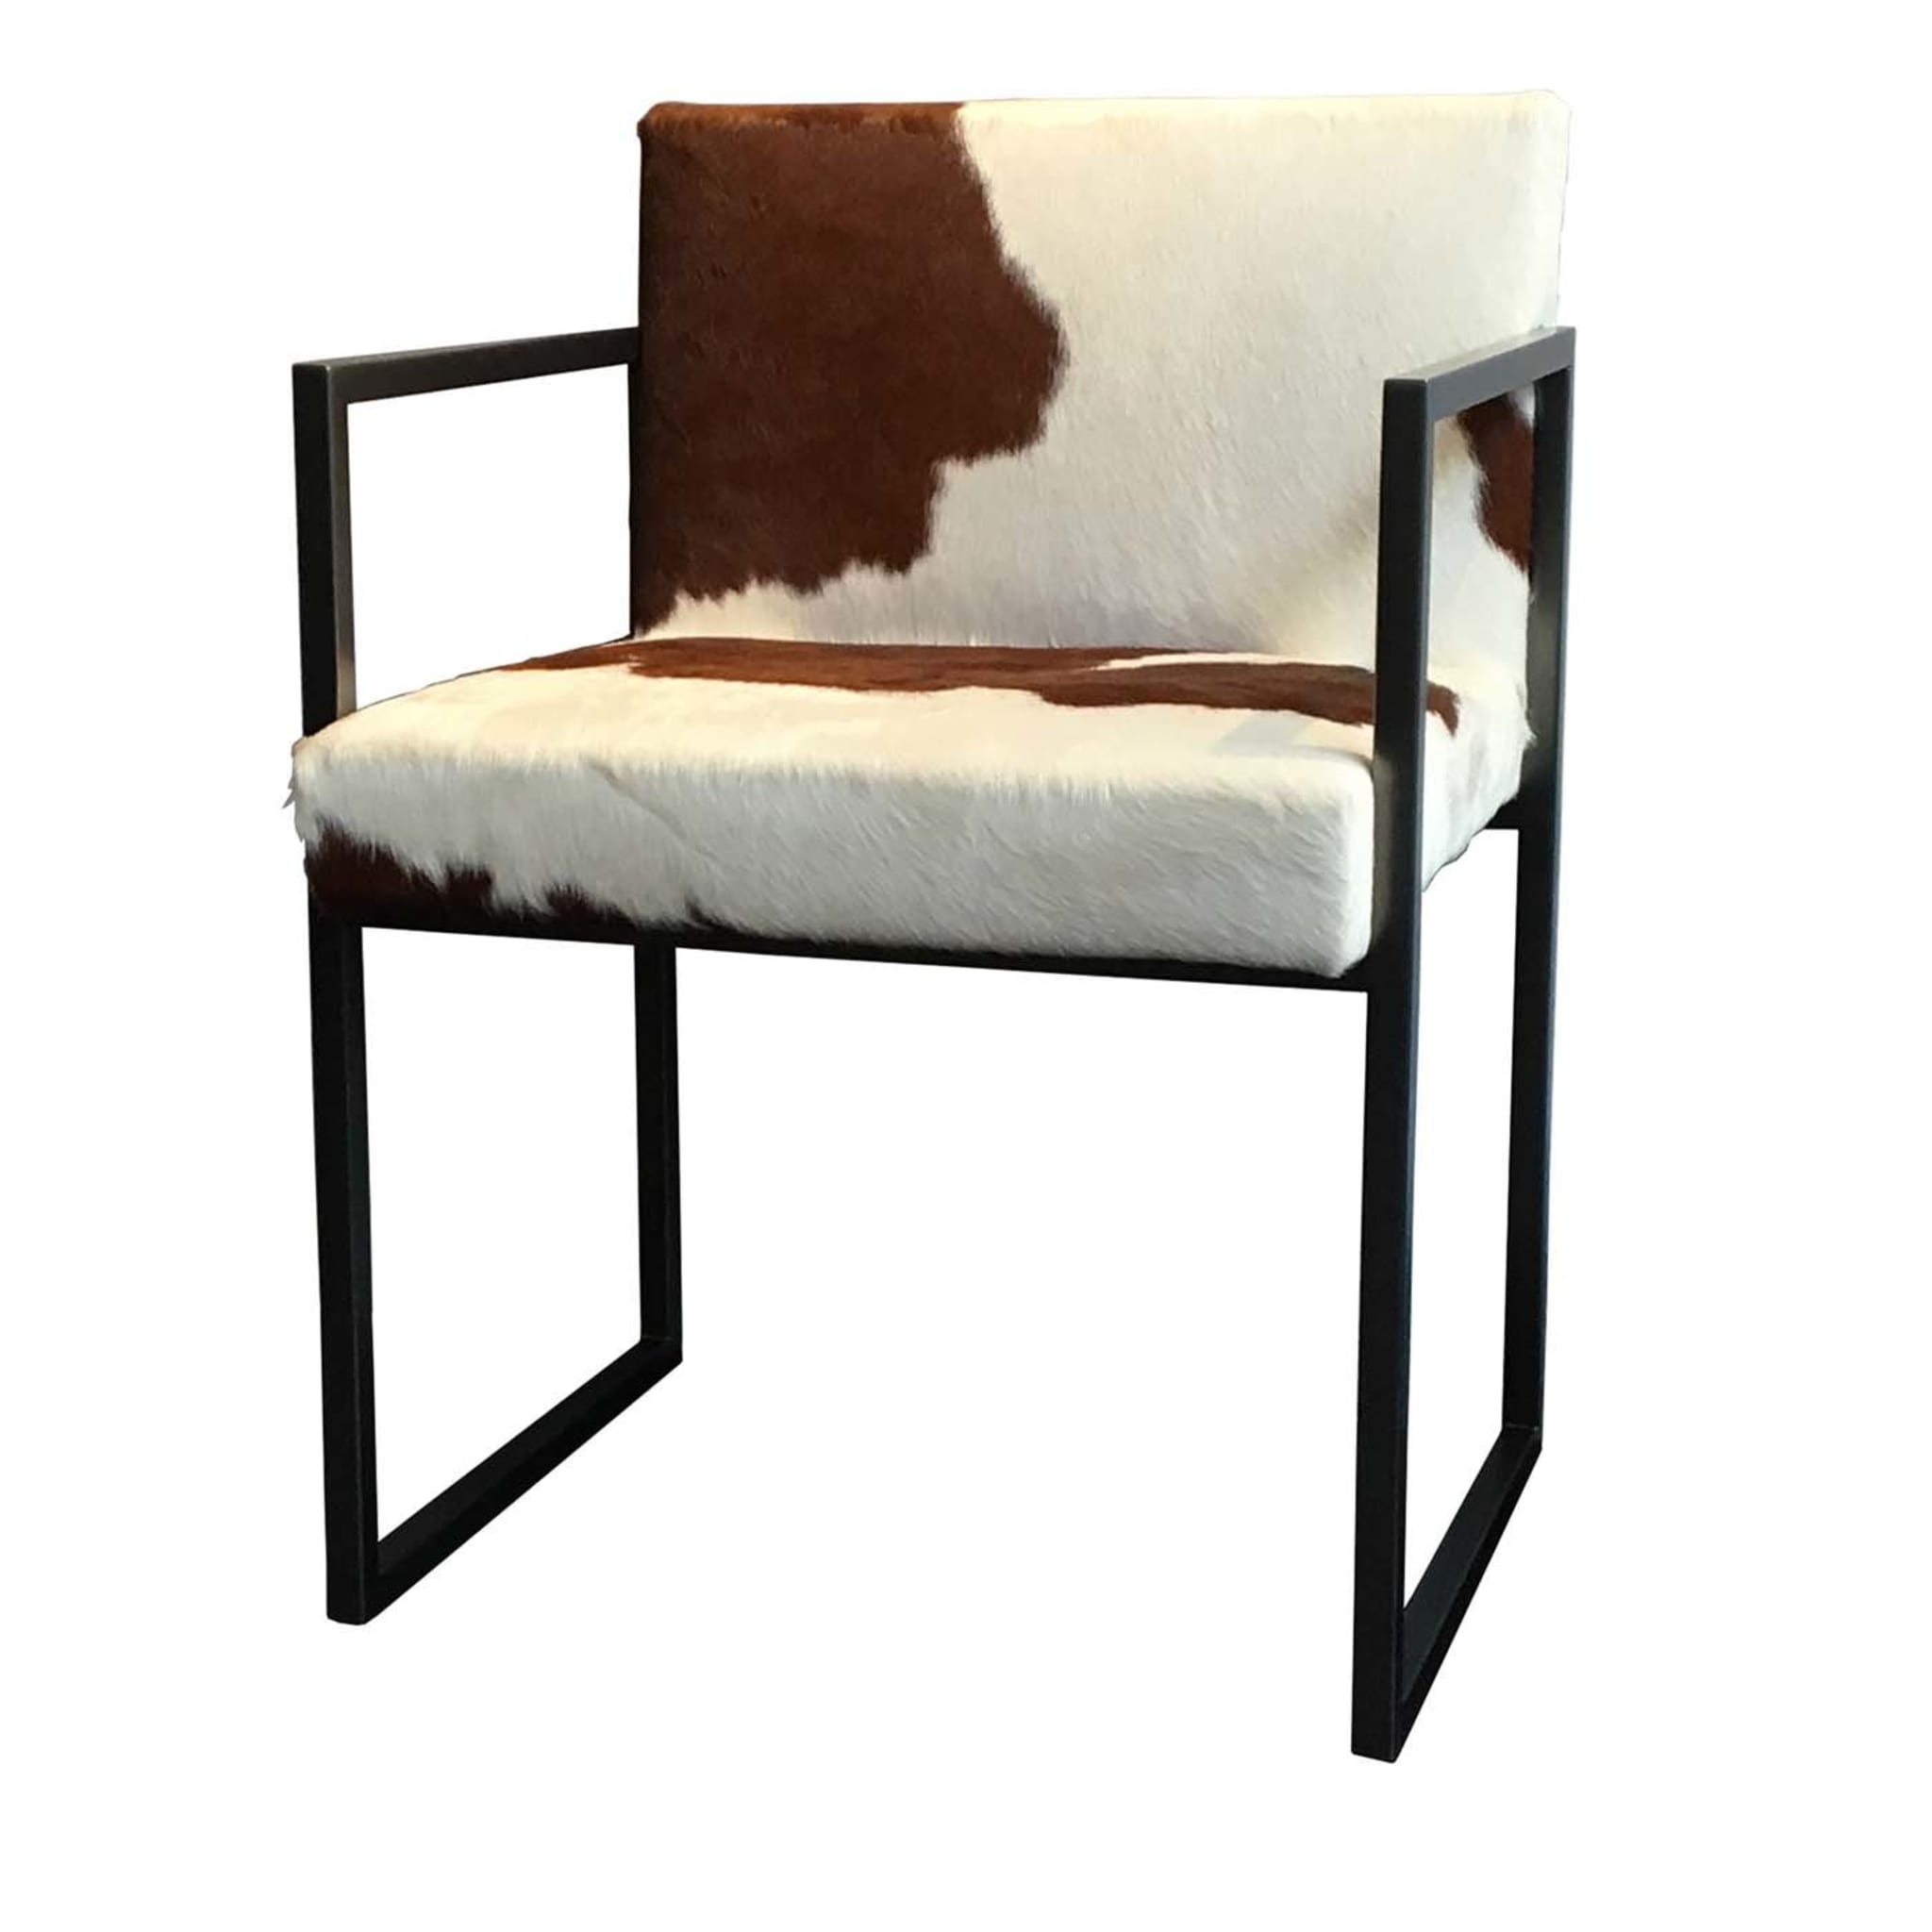 Paris BL2 Chair by Gianna Farina & Marco Gorini - Main view